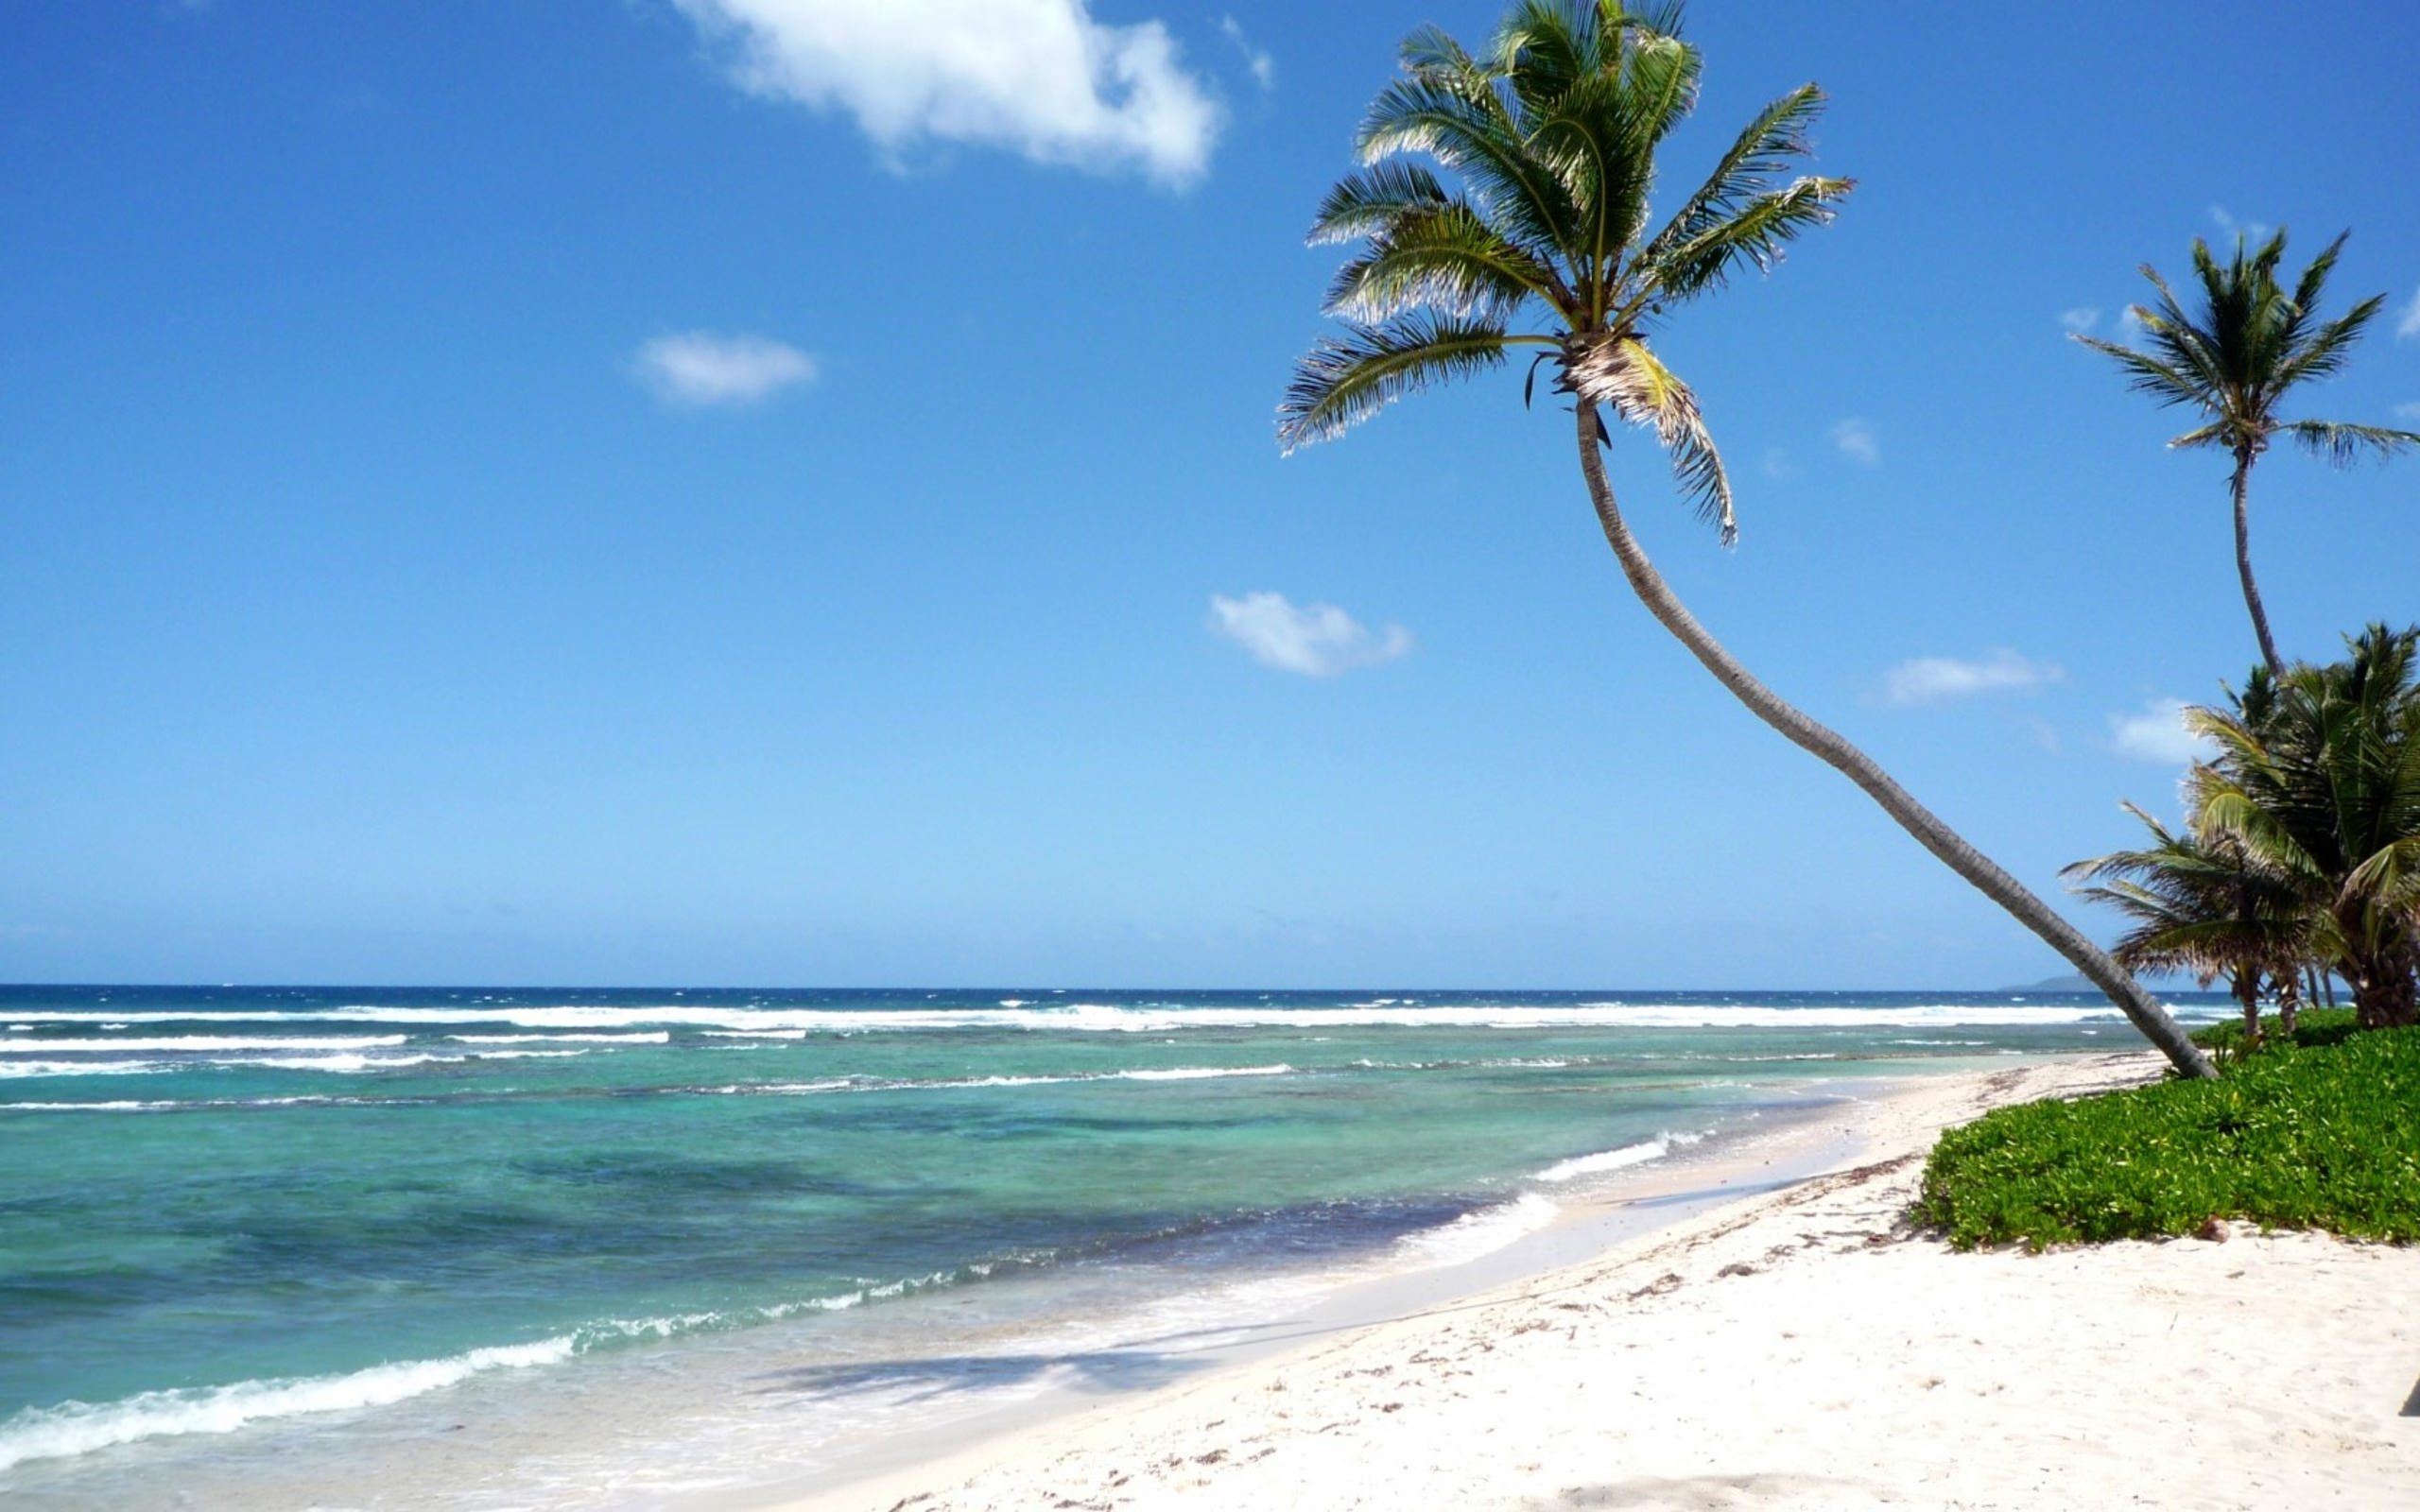 море, лето, остров, пальмы, солнце, песок, небо, красивые обои, Sea, summer, island, palm trees, sun, sand, sky, beautiful wallpaper